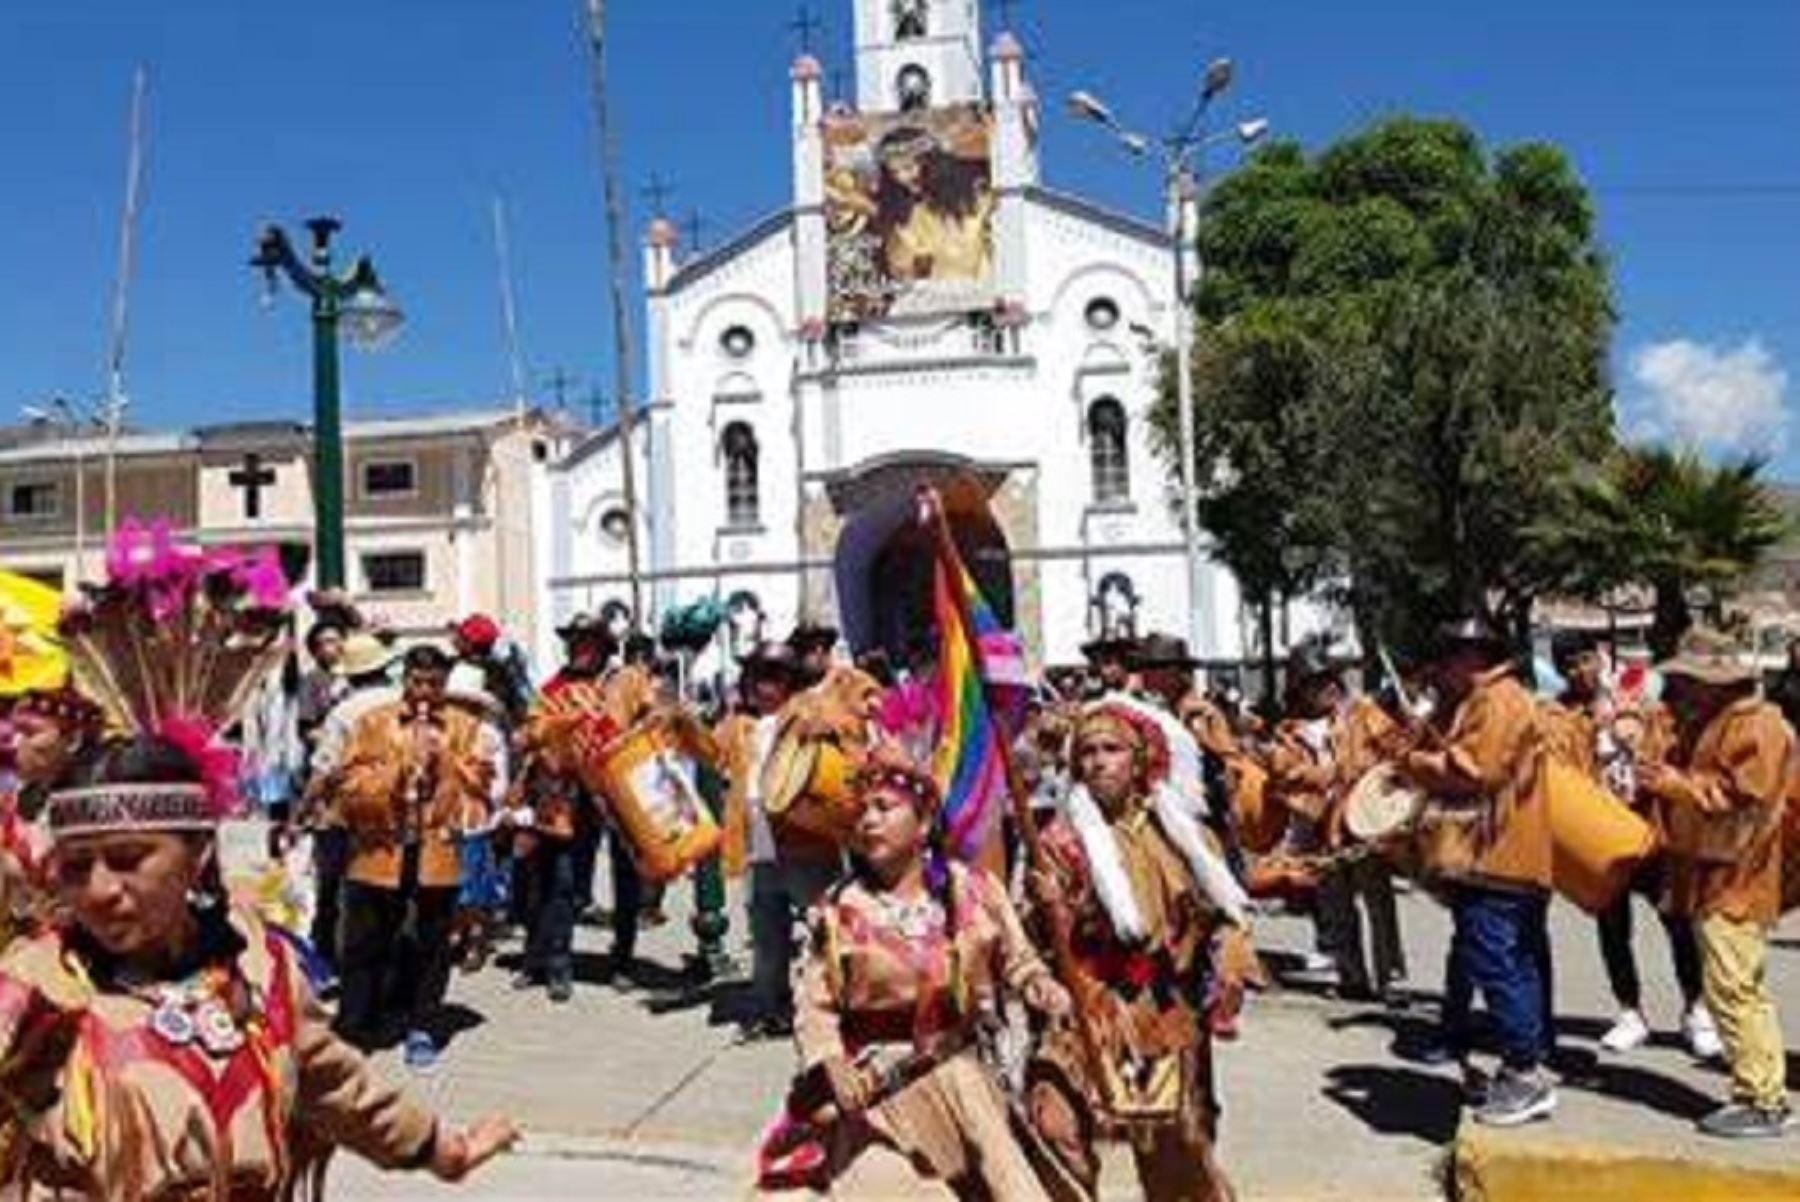 La danza "Pieles rojas de Paramonga", que inspiró el tatuaje que lleva en su brazo izquierdo el delantero ítalo peruano Gianluca Lapadula, está vinculada a festividades religiosas del catolicismo, como las fiestas del Señor de la Soledad y la Virgen de las Mercedes, que se celebran en Paramonga.